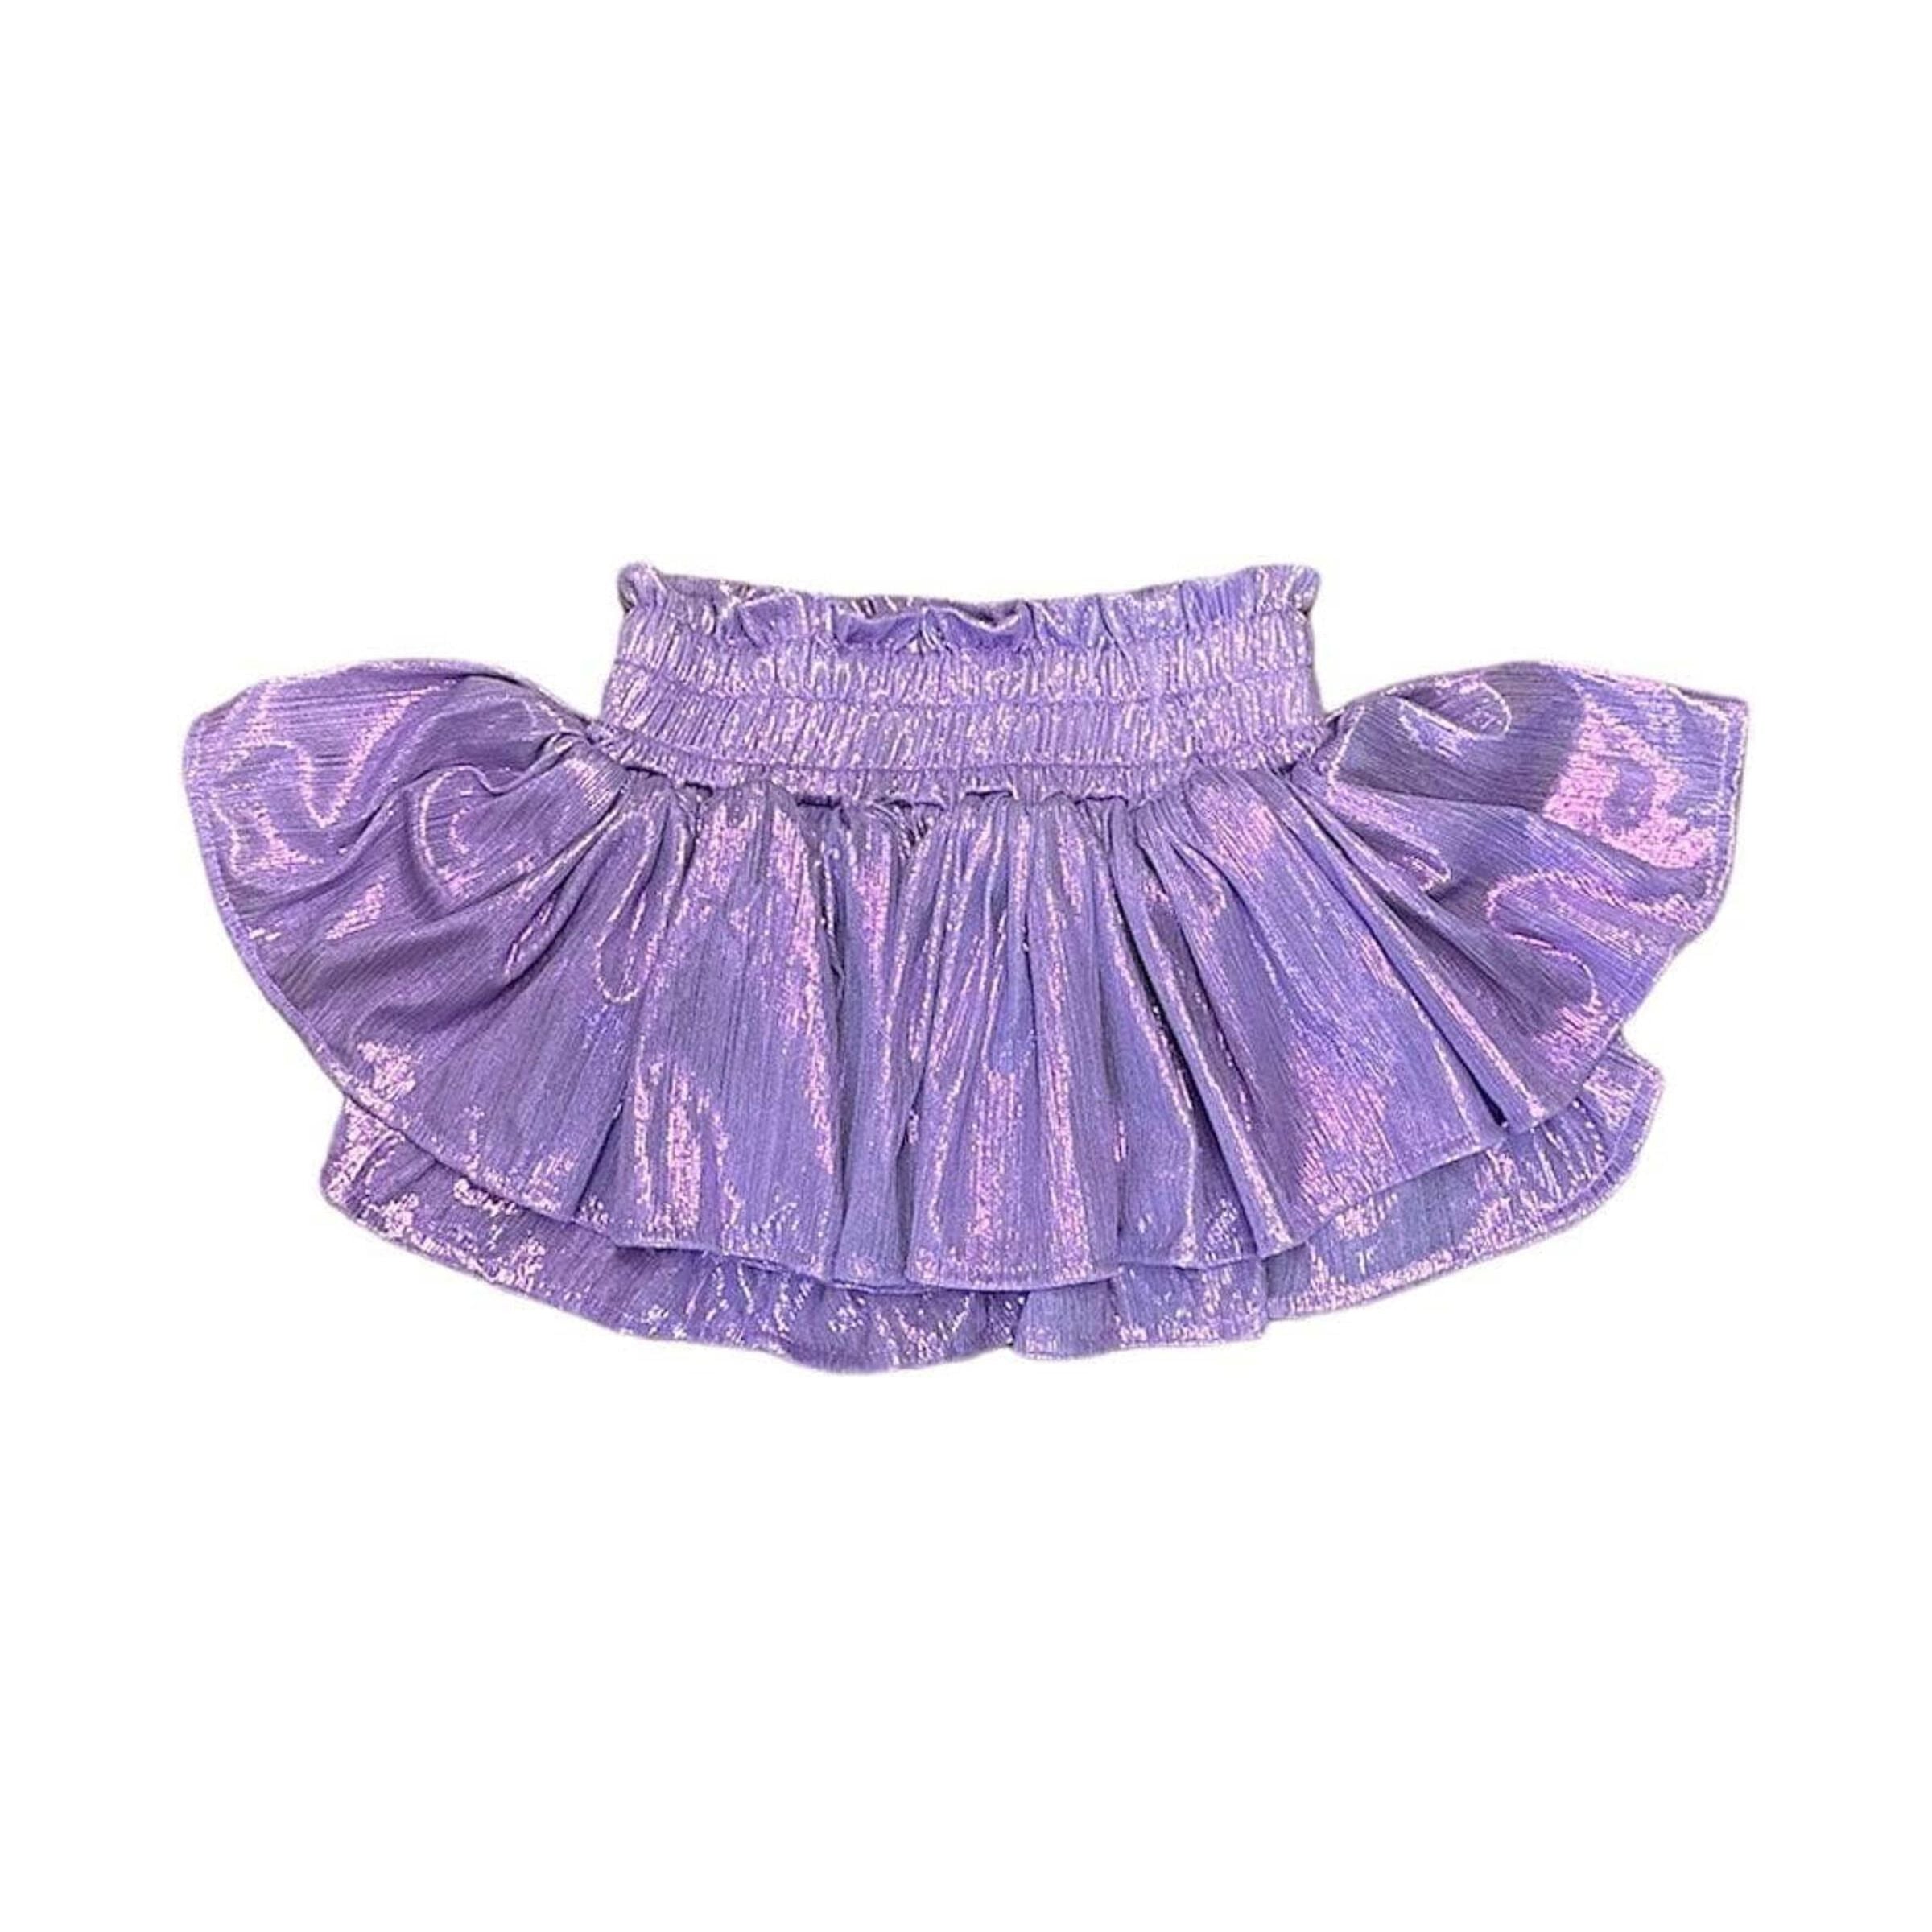 Metallic Skirt - Lavender